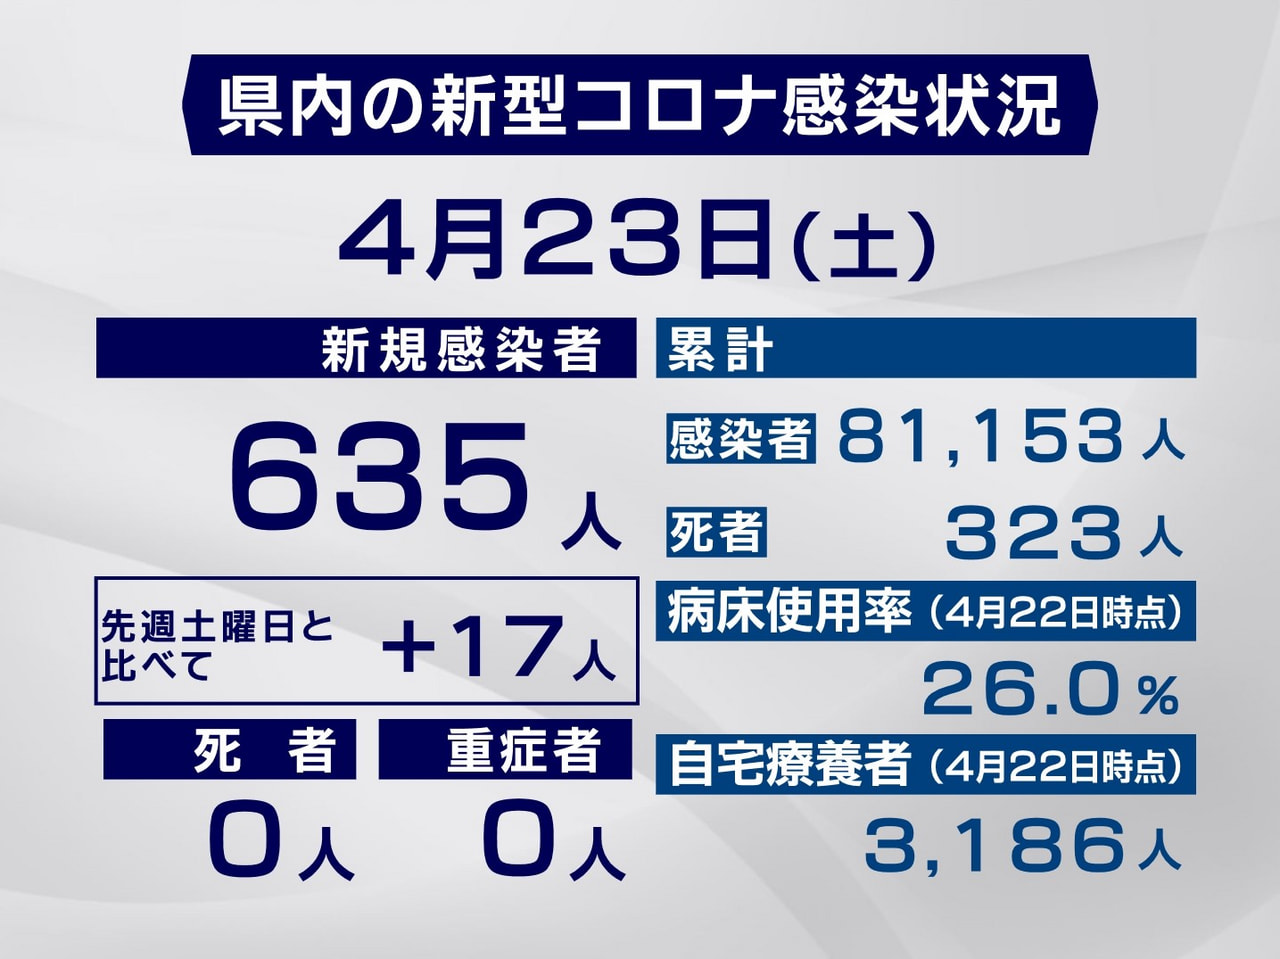 岐阜県は２３日、新型コロナウイルスの新規感染者が６３５人確認されたと発表しました...